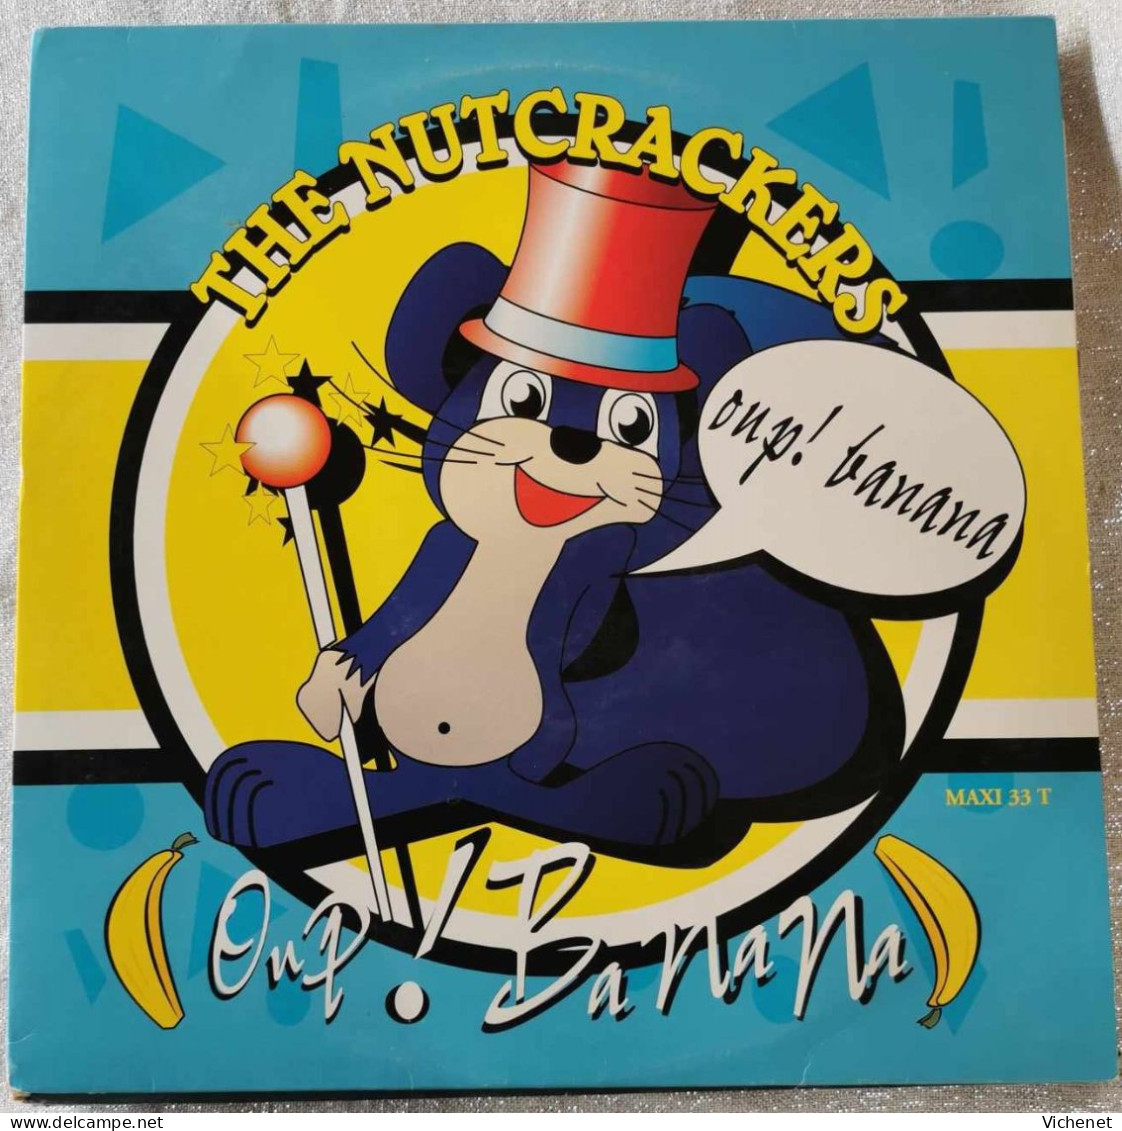 The Nutcrackers – Oup! Banana - Maxi - 45 Rpm - Maxi-Single